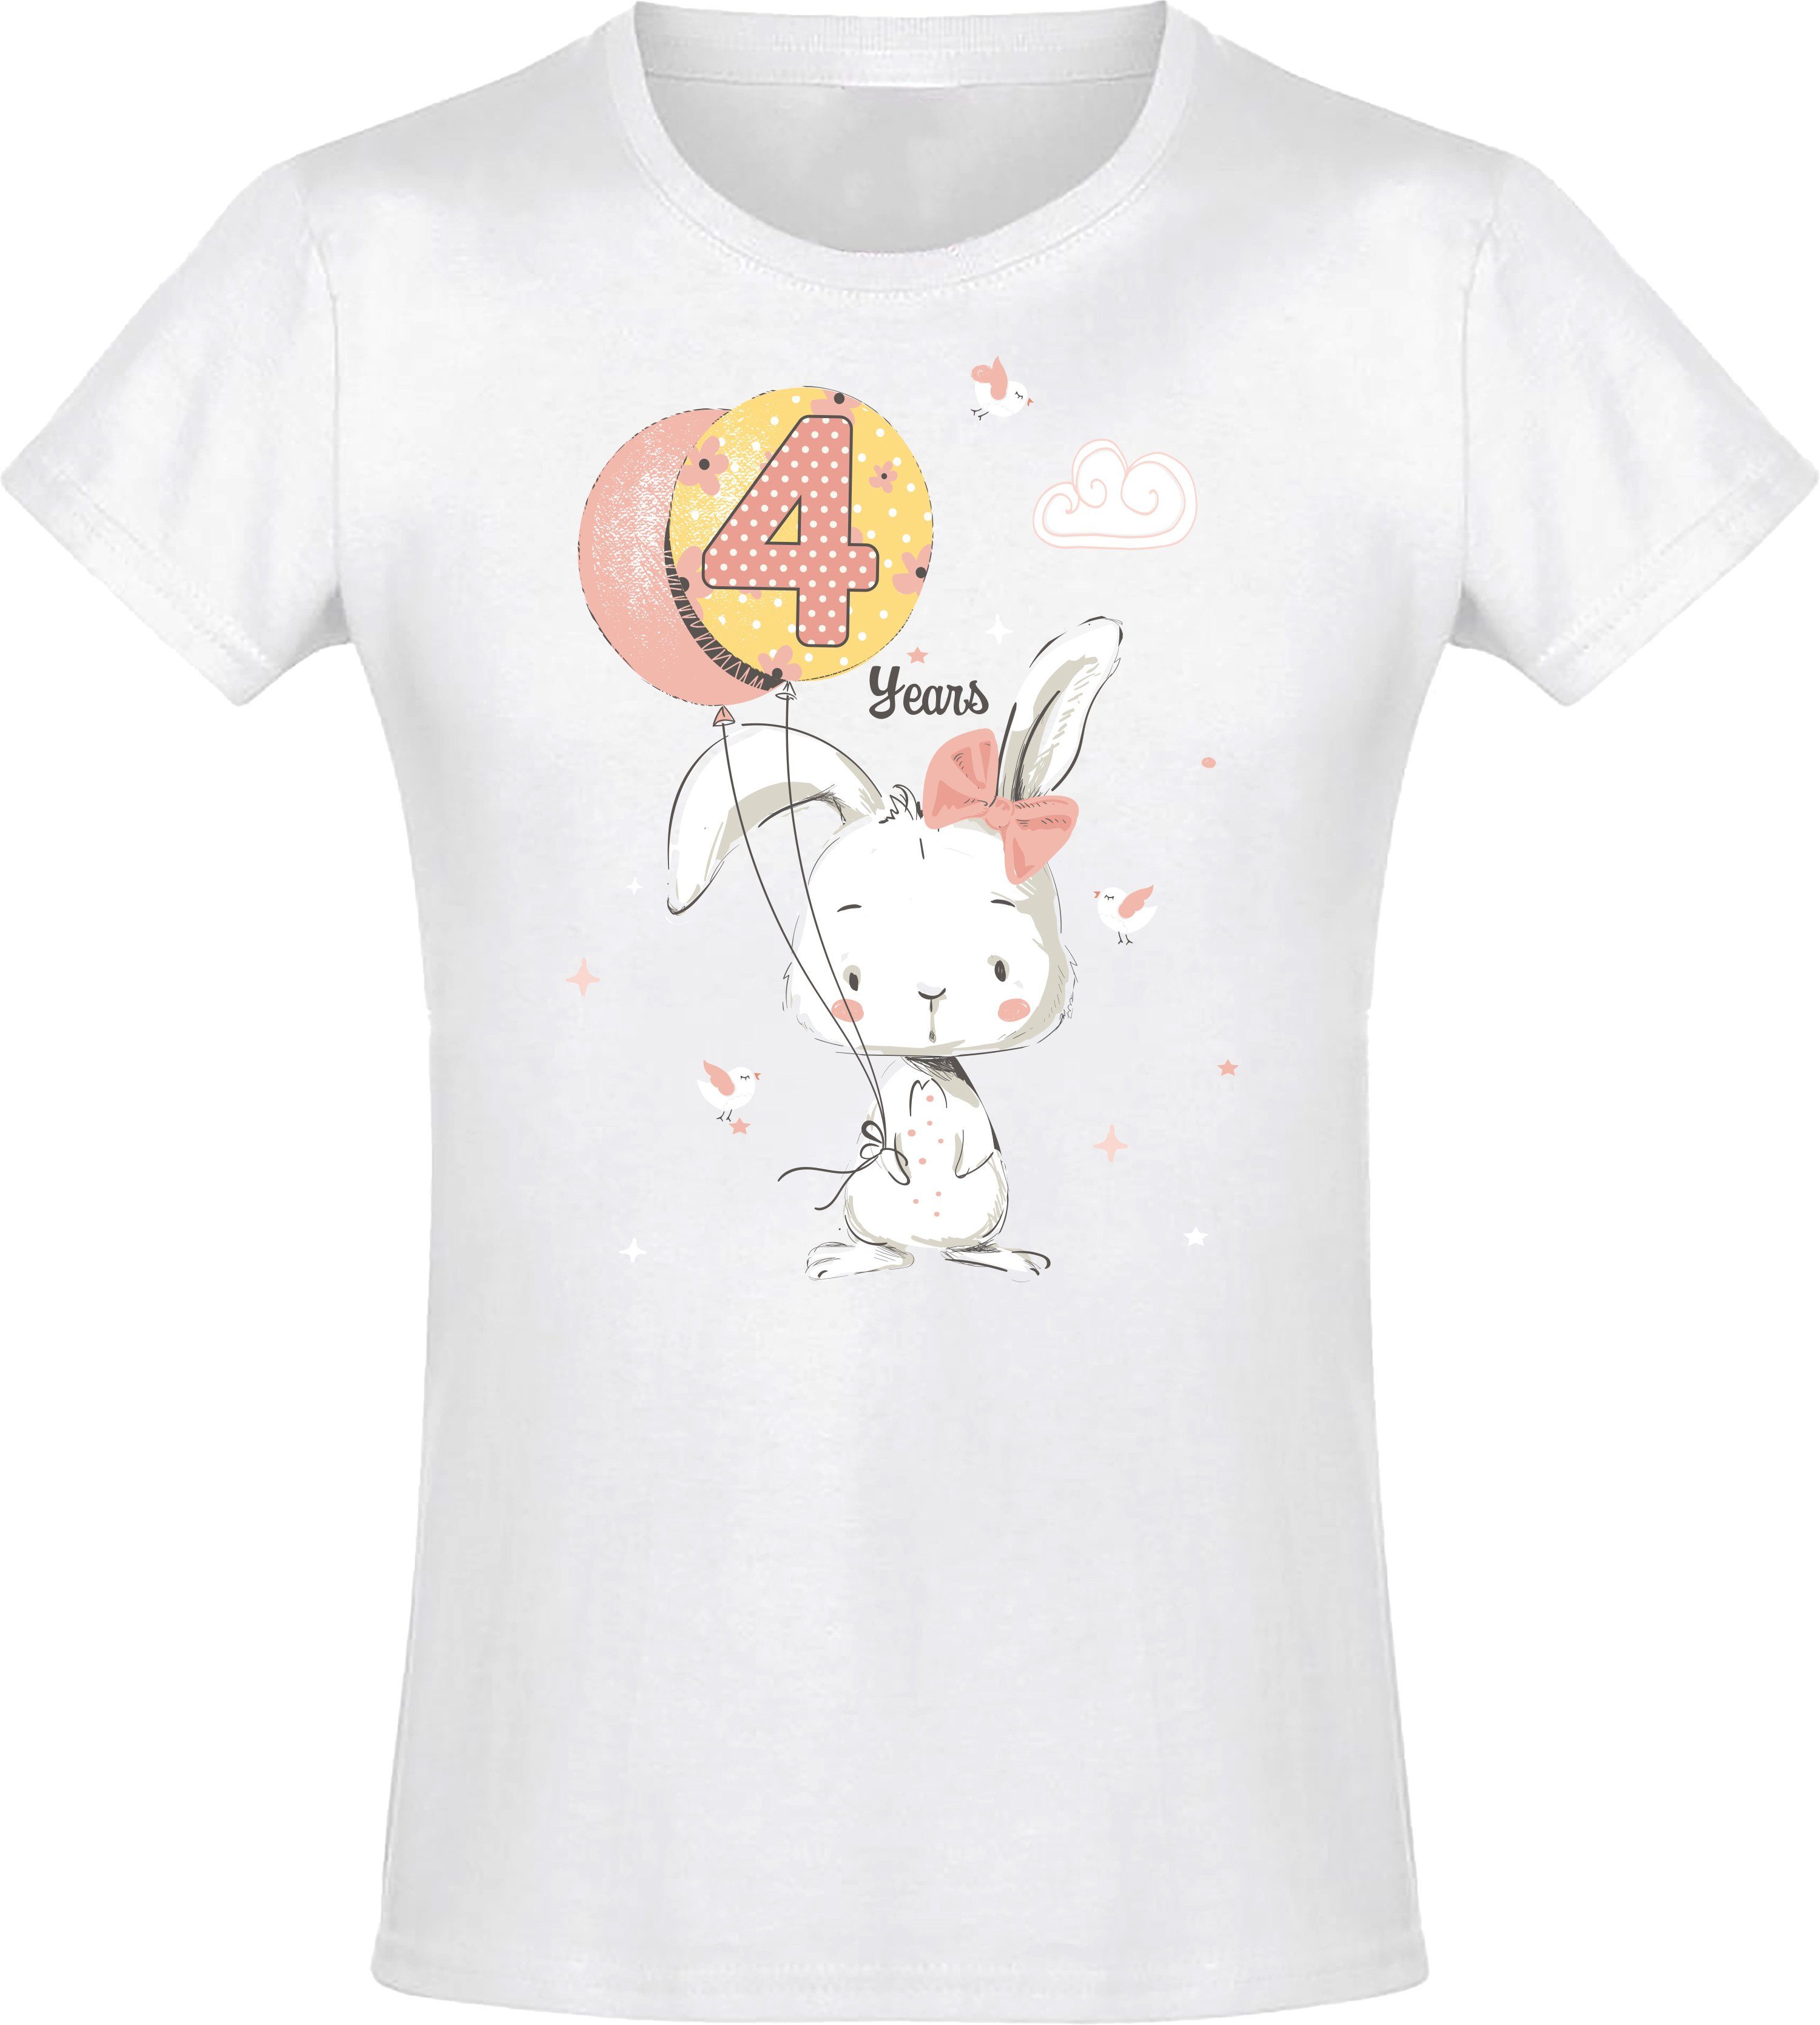 Siebdruck, Hase hochwertiger : Baddery Weiß aus Baumwolle für Geburstagsgeschenk 4 Jahre Print-Shirt Mädchen mit